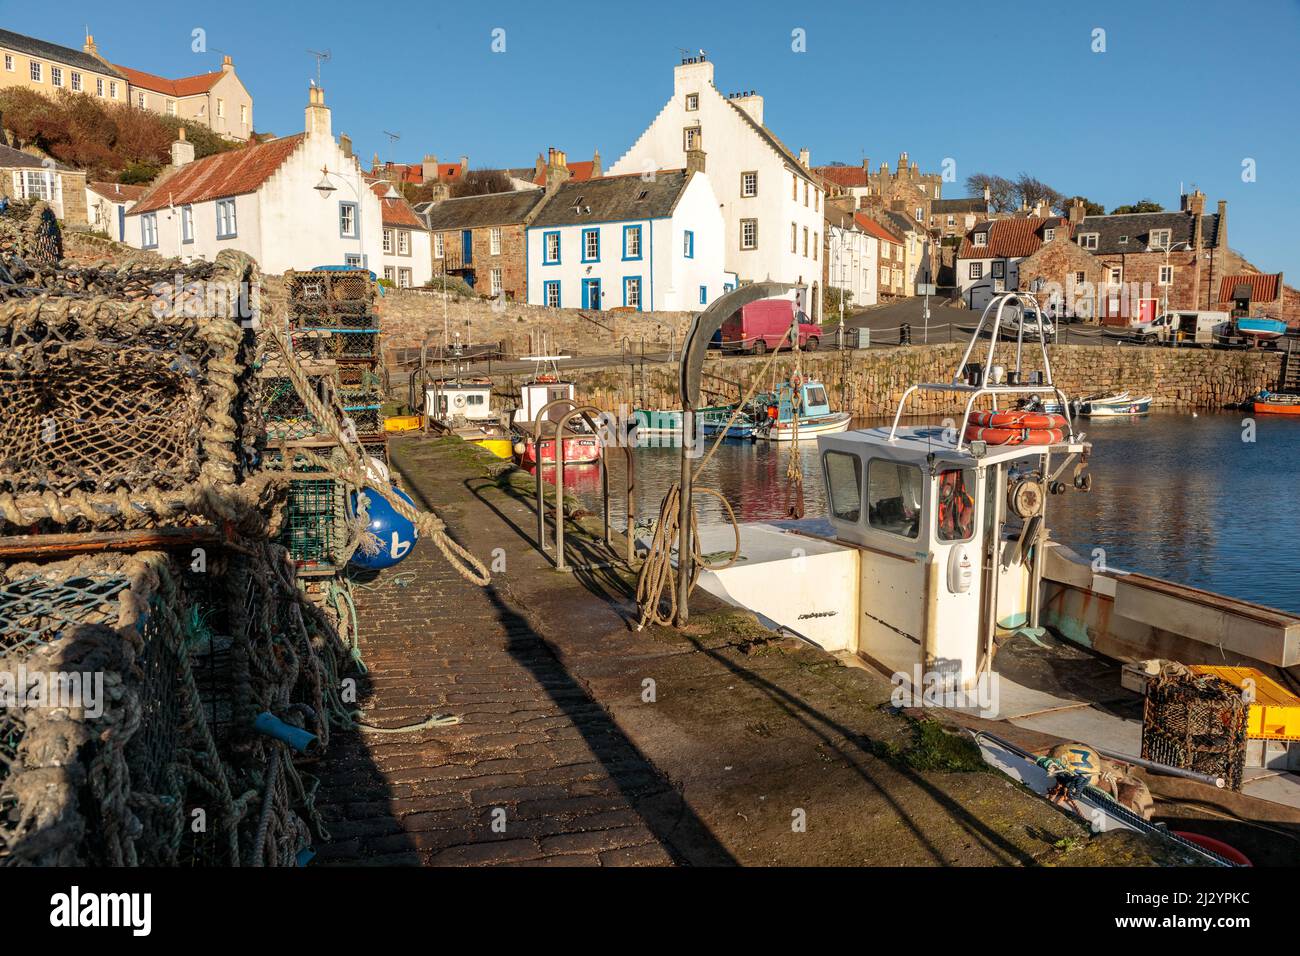 Crail Harbor and Fishing Village, Fife, Scotland, UK Stock Photo